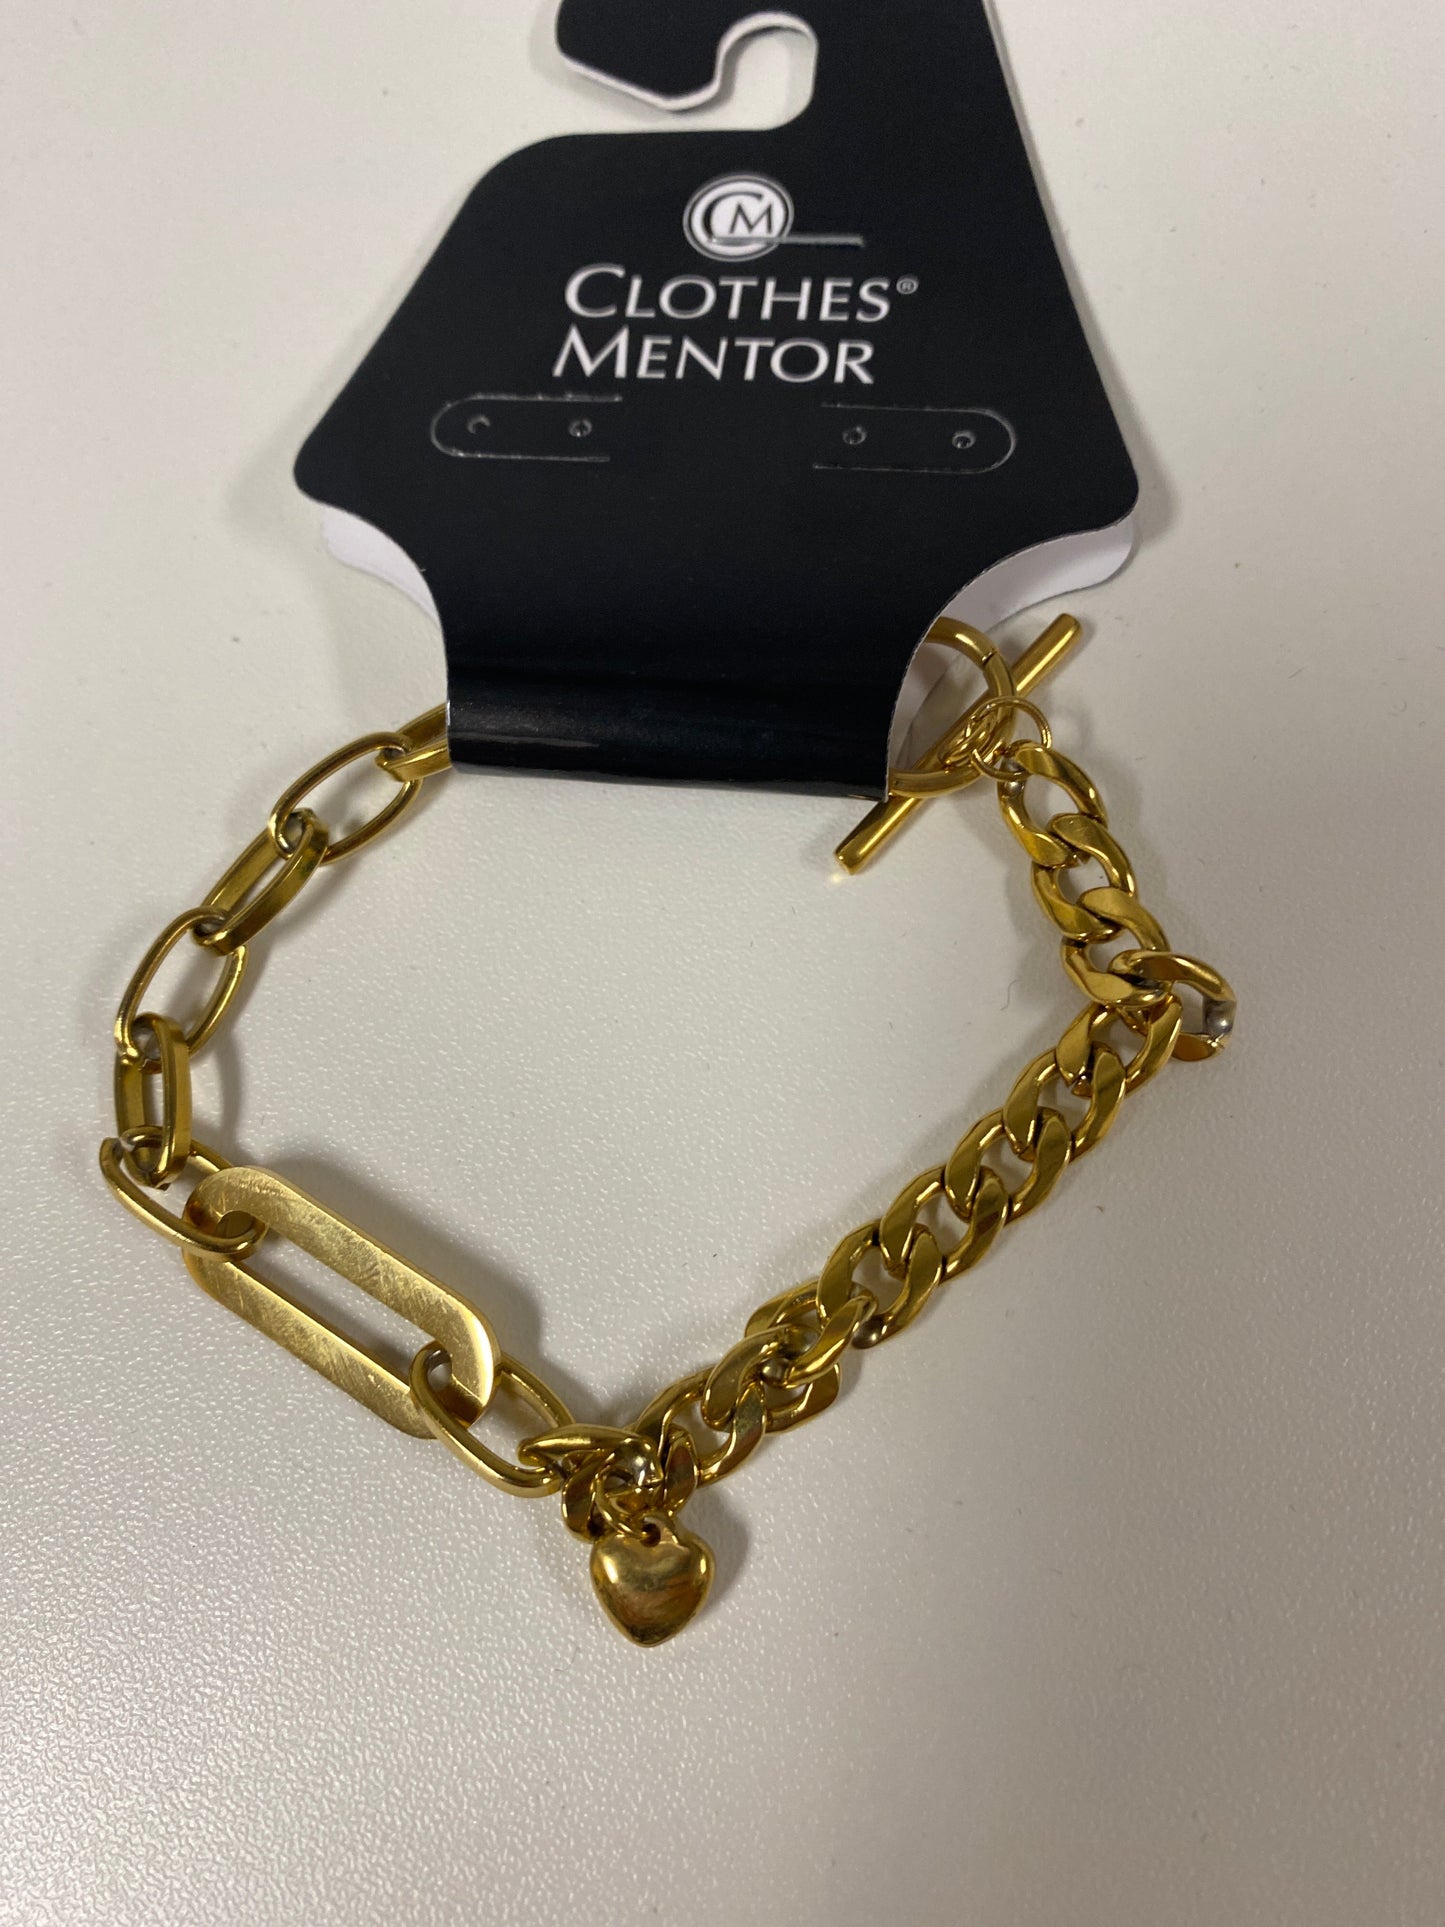 Bracelet Chain Clothes Mentor, Size 1